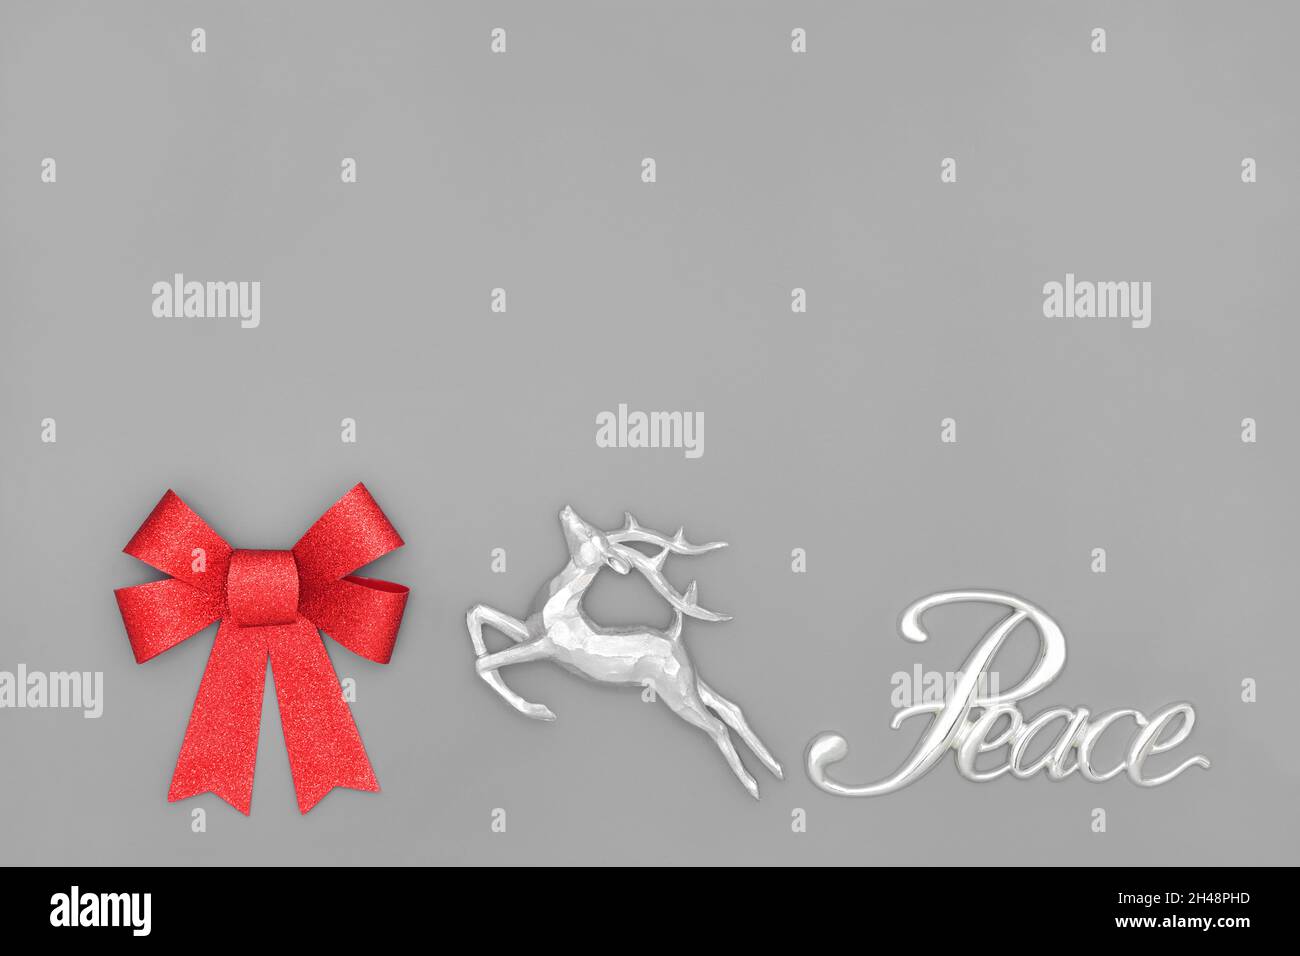 Concept de paix à Noël avec signe argenté, renne, noeud rouge scintillant sur fond gris.Composition abstraite pour les fêtes. Banque D'Images